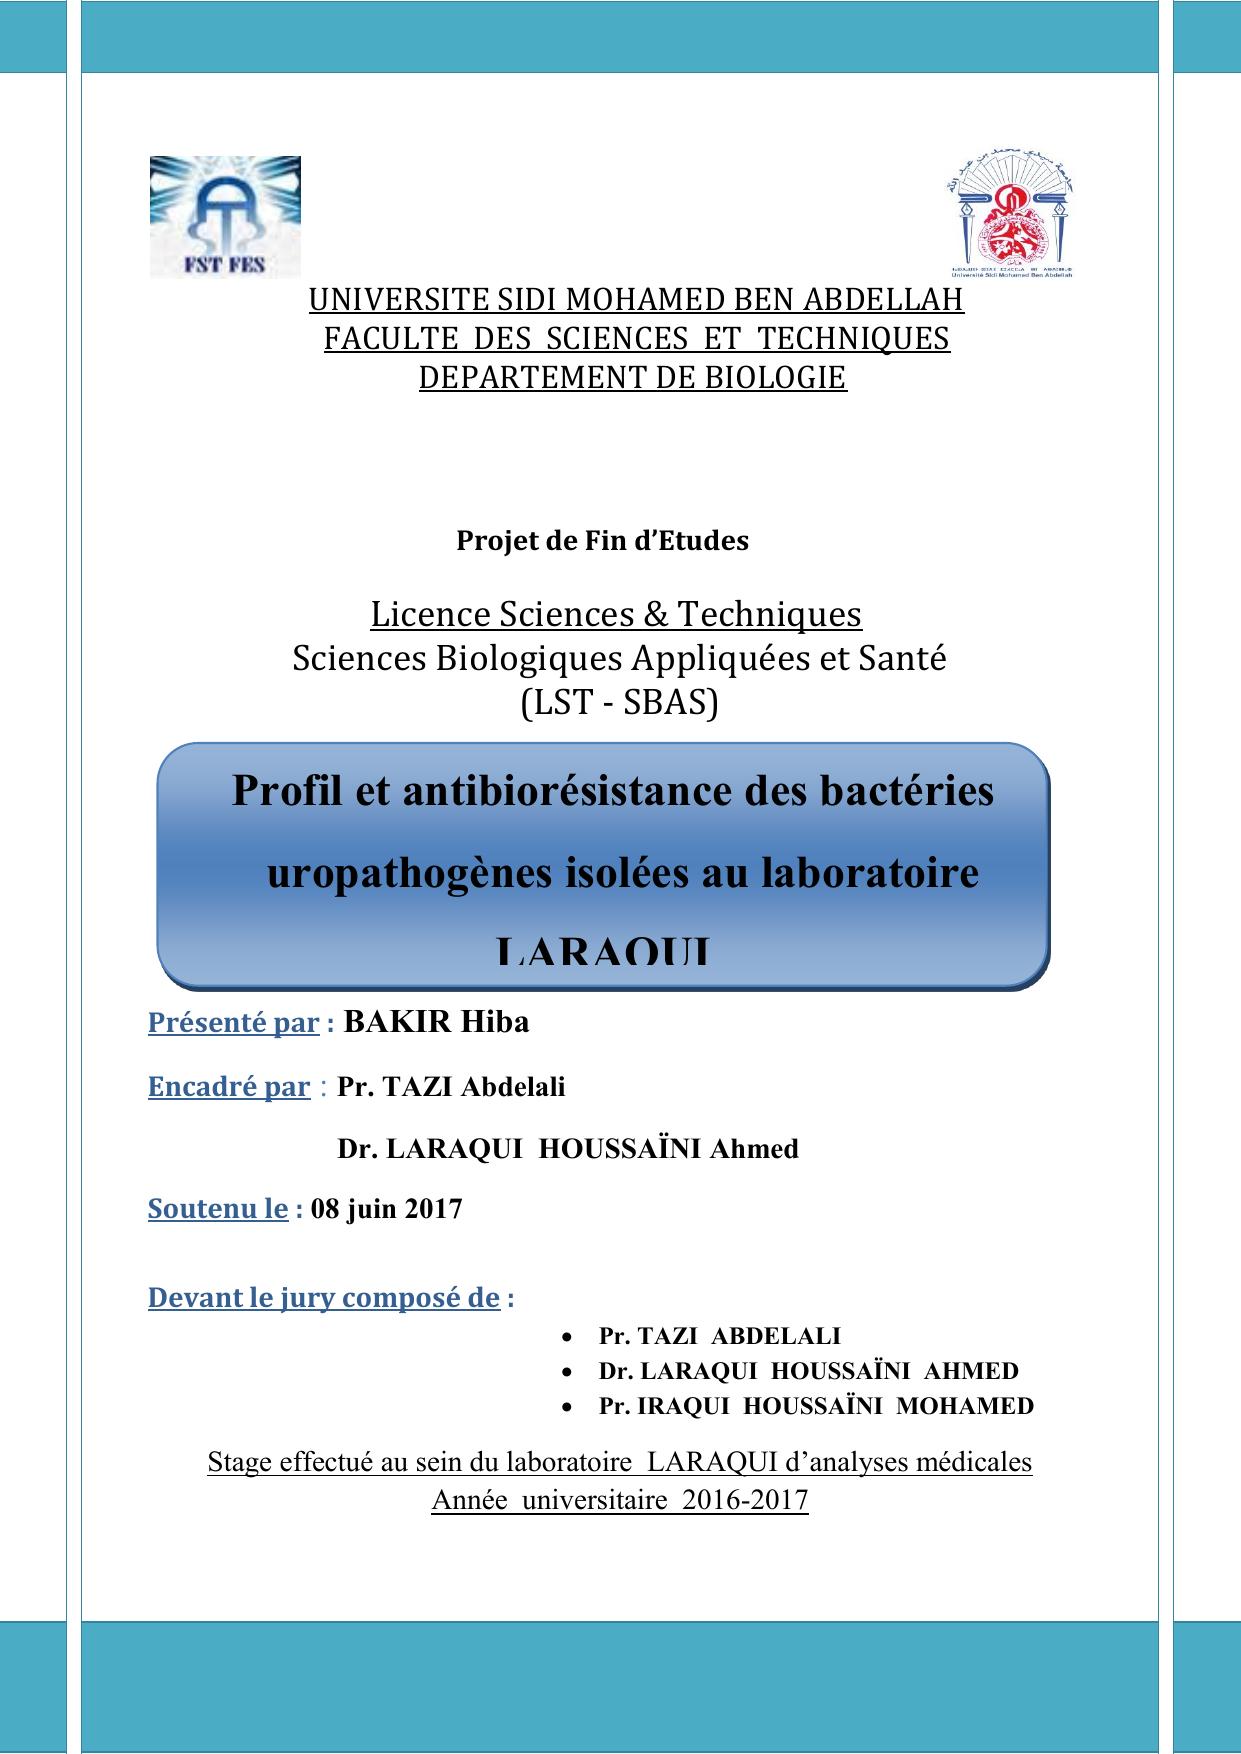 Profil et antibiorésistance des bactéries uropathogènes isolées au laboratoire LARAQUI